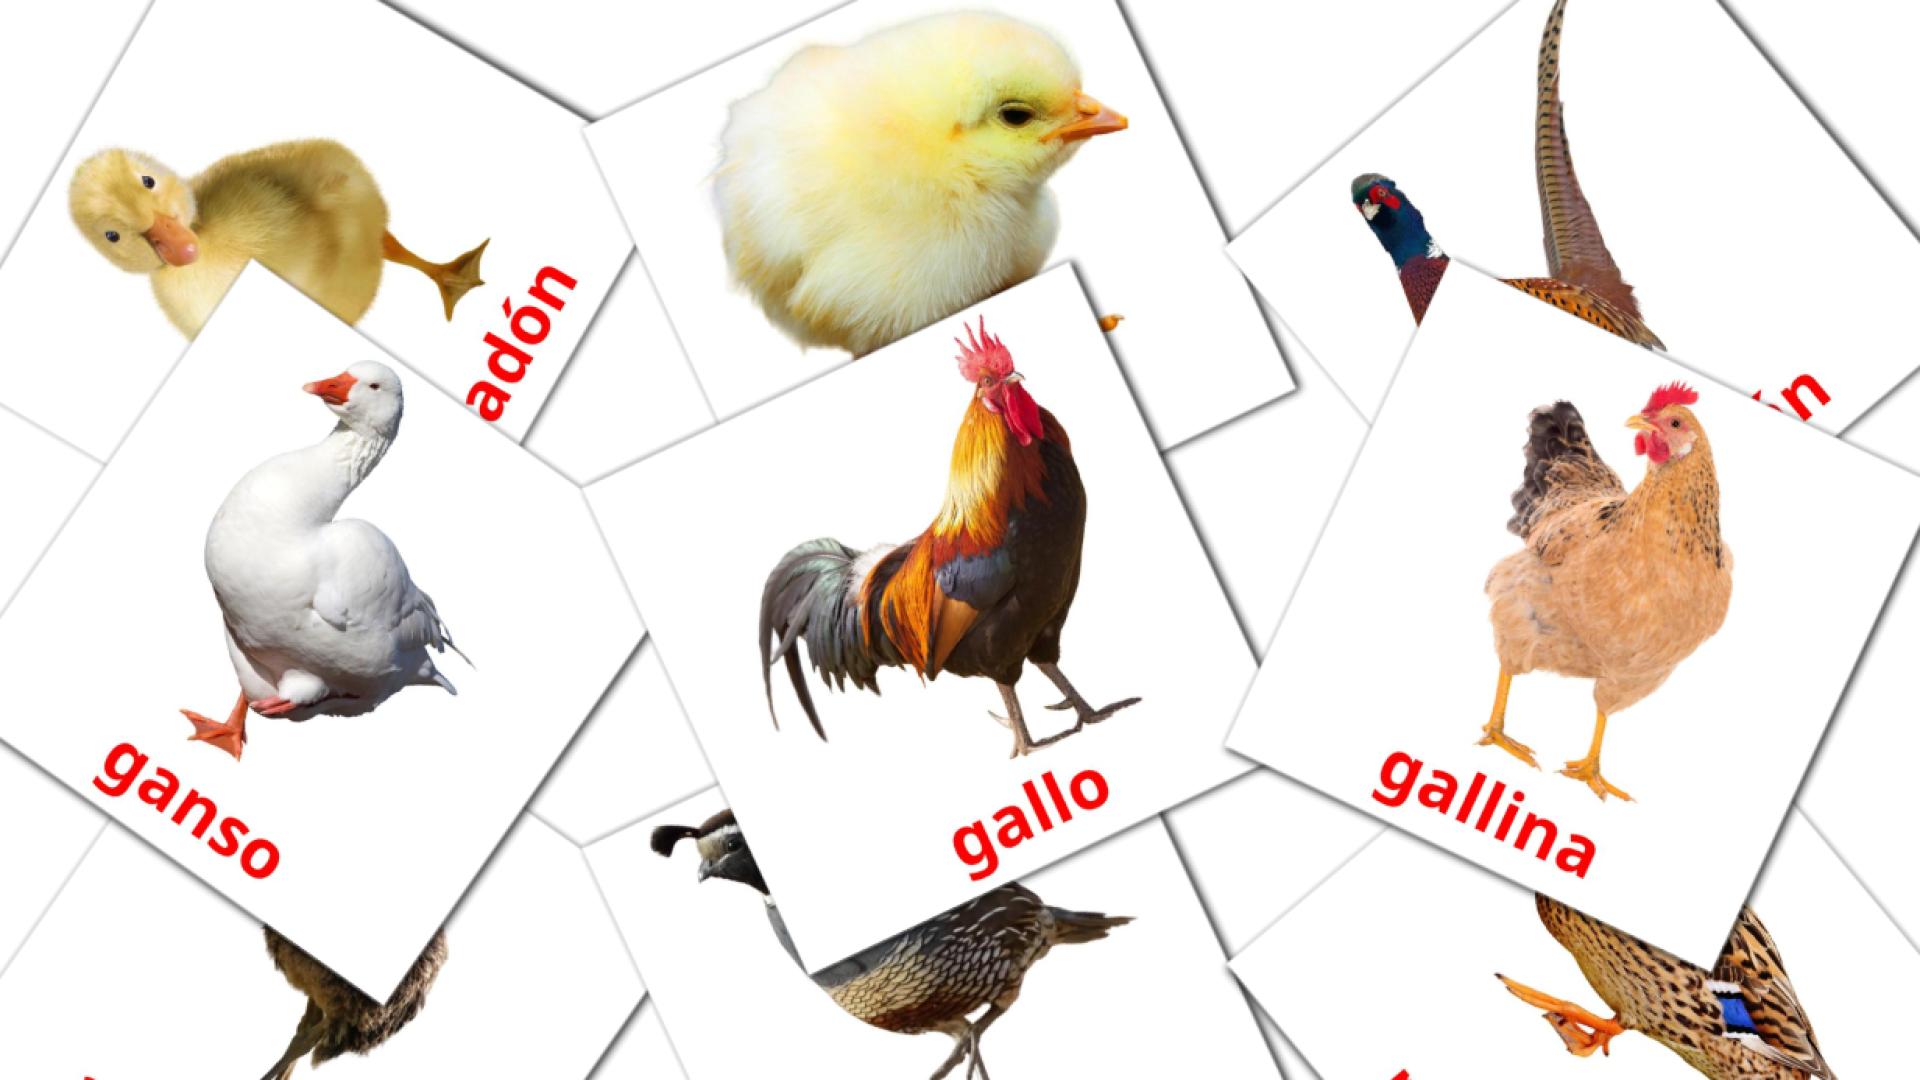 Bildkarten für Aves de granja